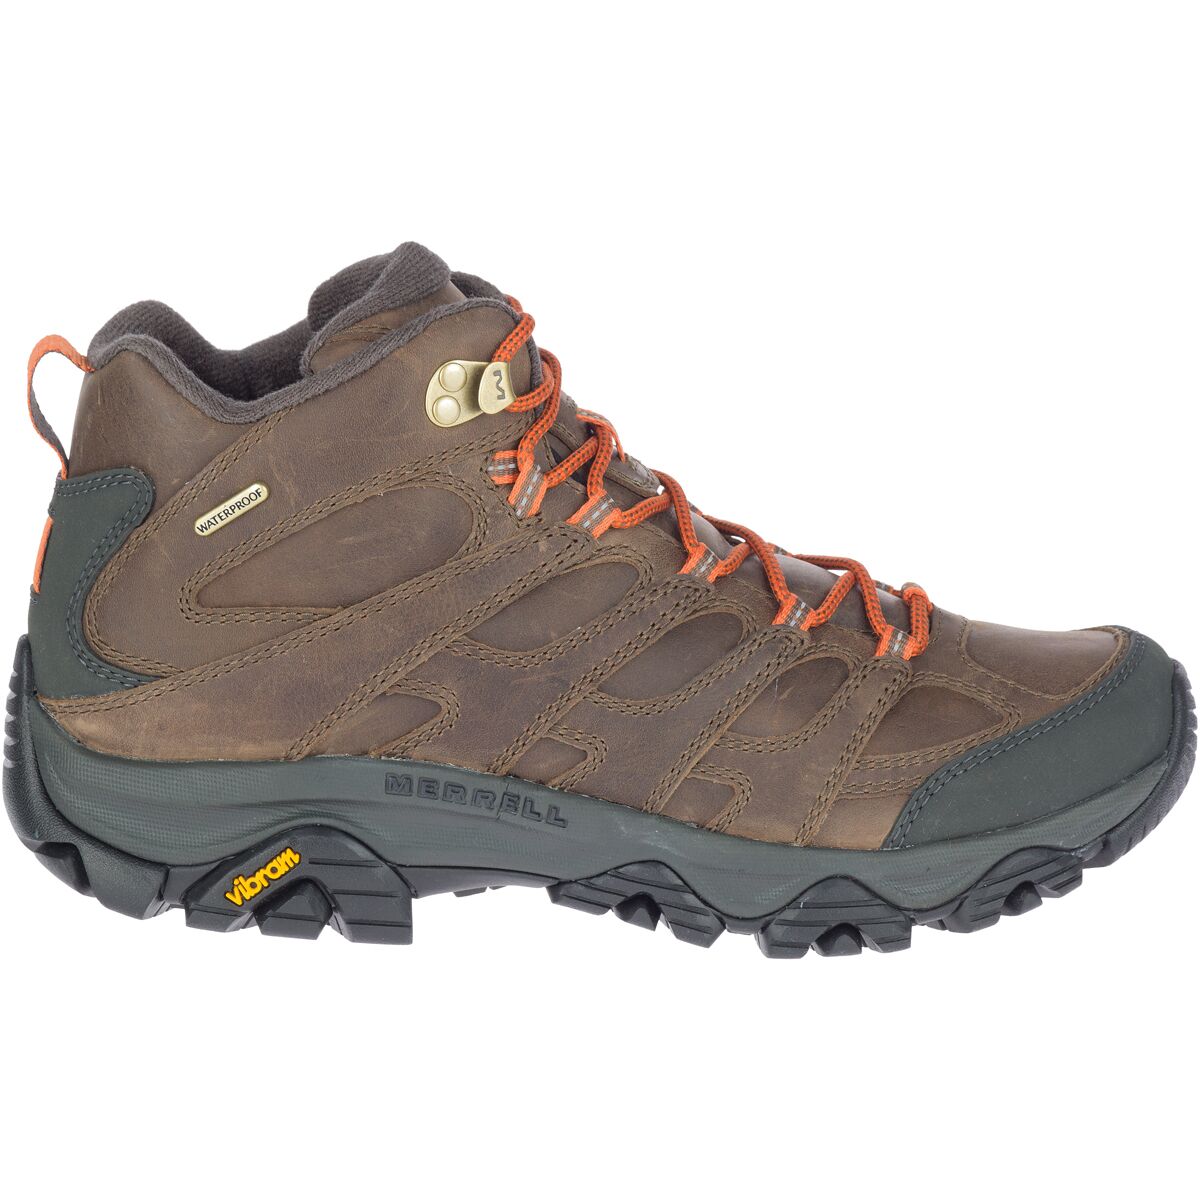 Moab 3 Prime Mid WP Hiking Boot - Men